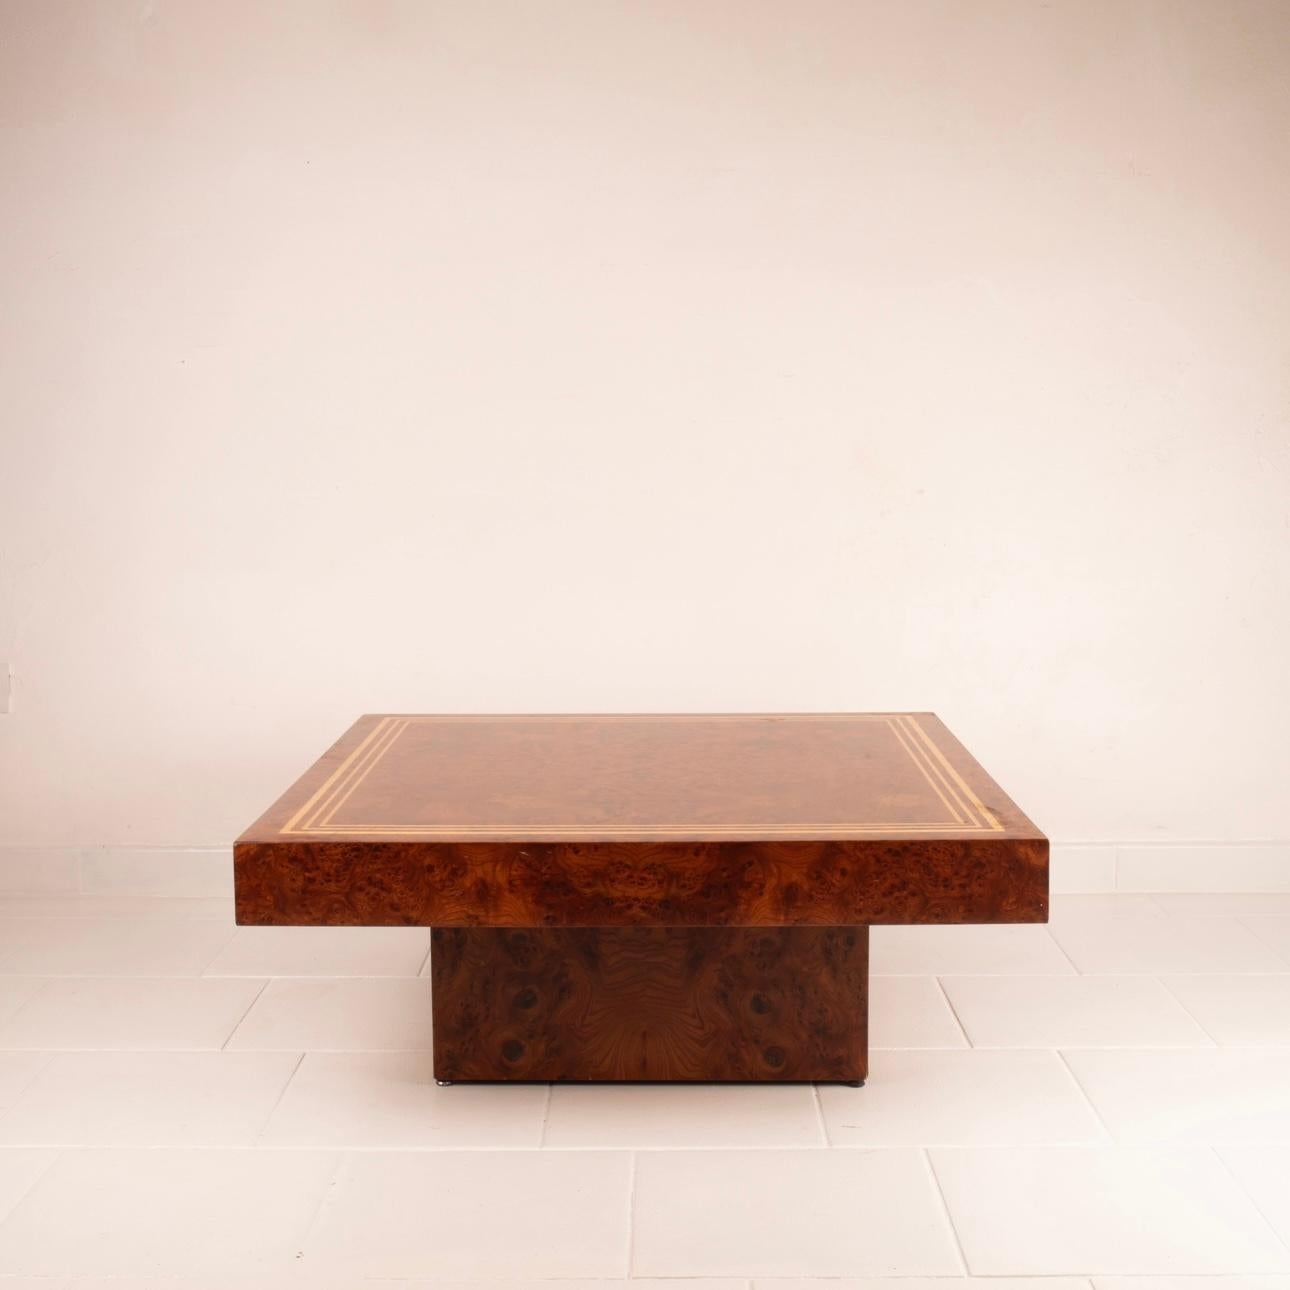 Découvrez cette magnifique table basse en placage de bois avec des profils de bois de bruyère et d'érable, un chef-d'œuvre du design des années 1970 conçu et produit par Fabrizio Smania pour Studio Smania Interni.
Cette table basse appartient à la